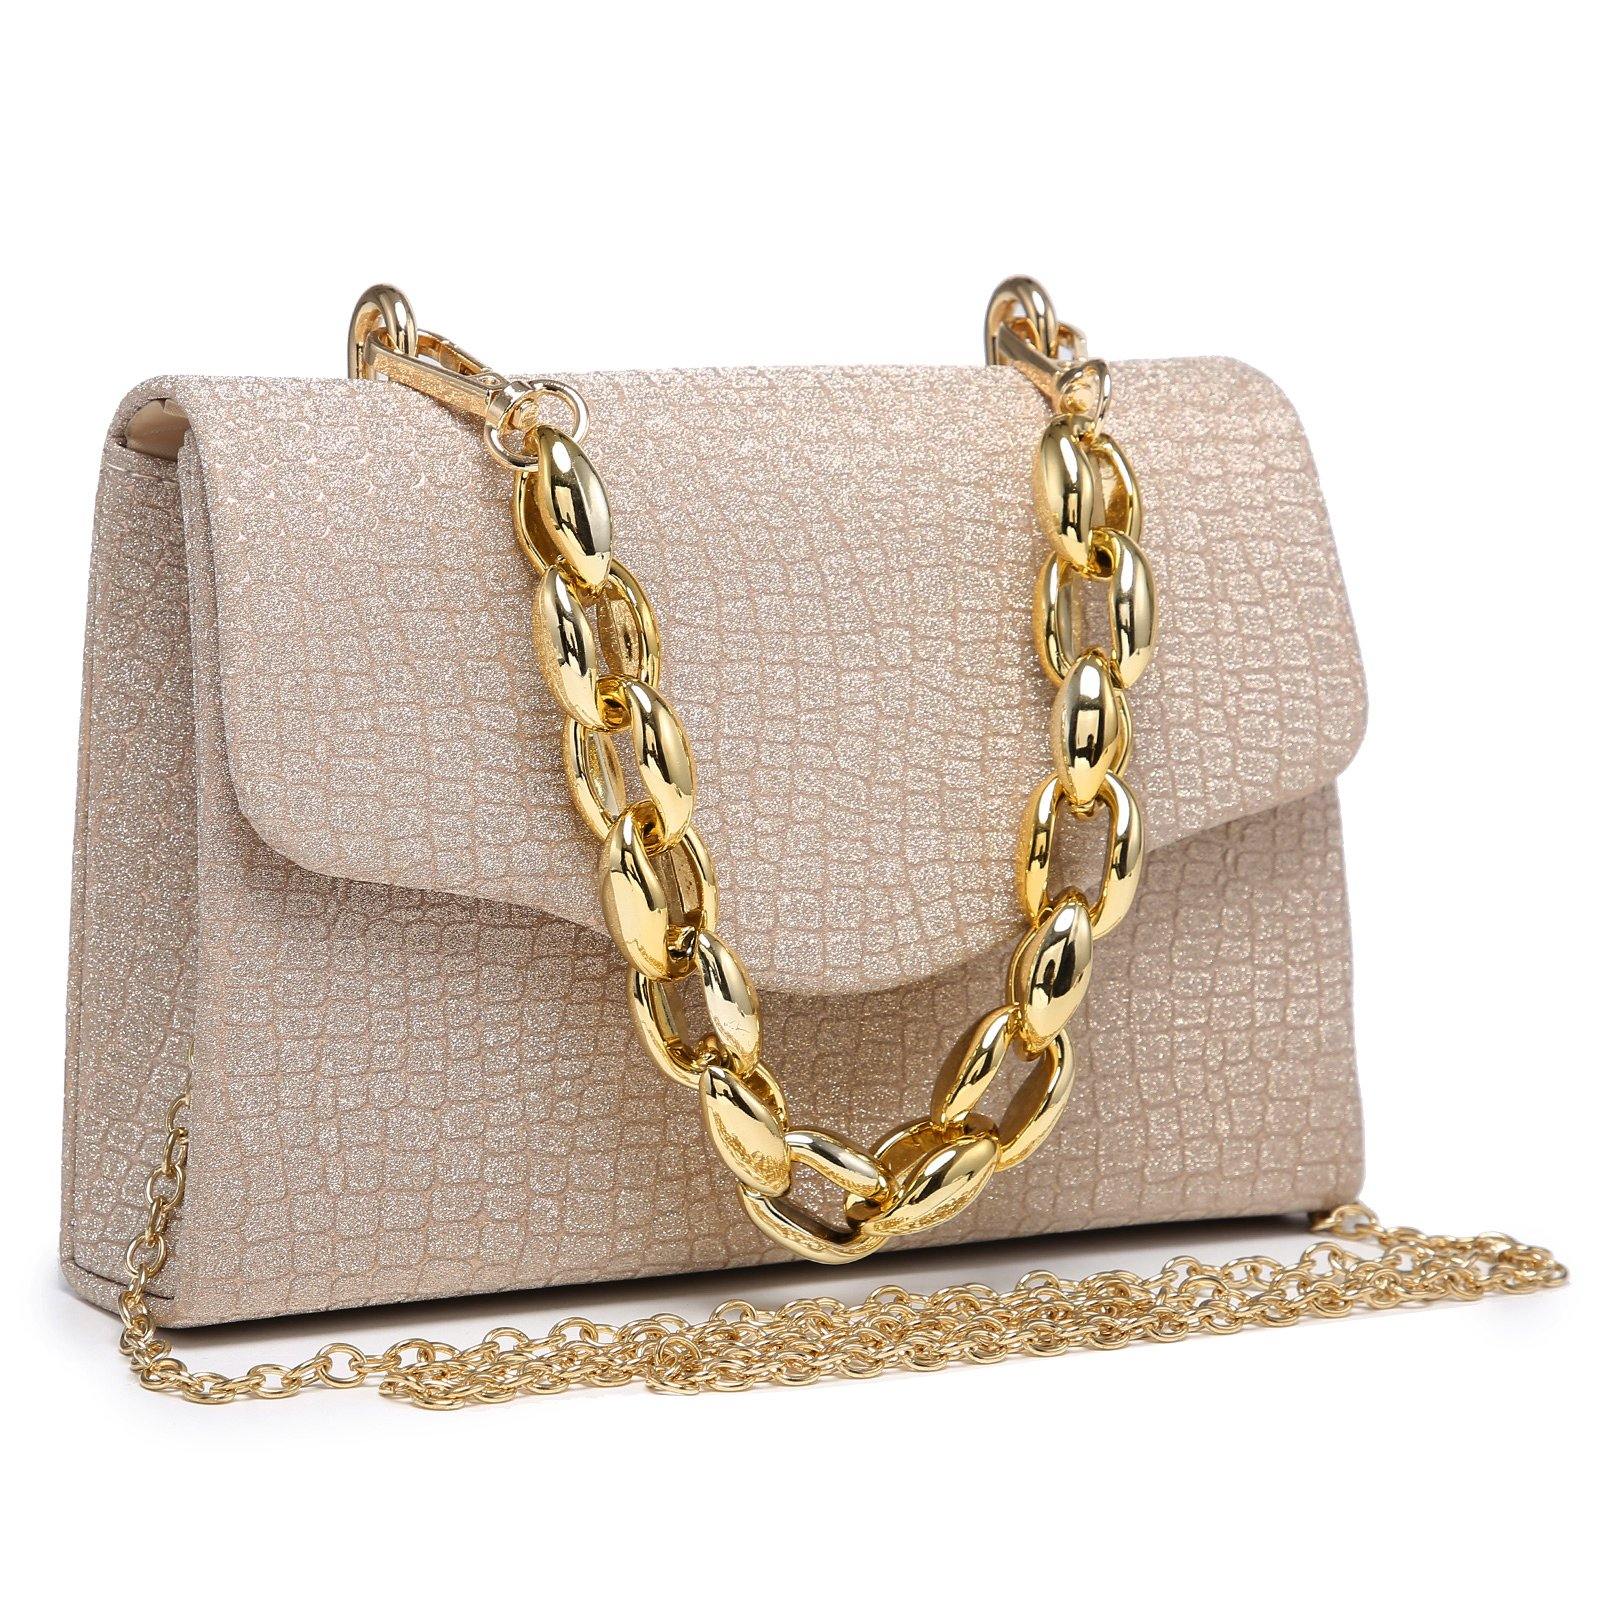  Louis Vuitton - Women's Clutches & Evening Handbags